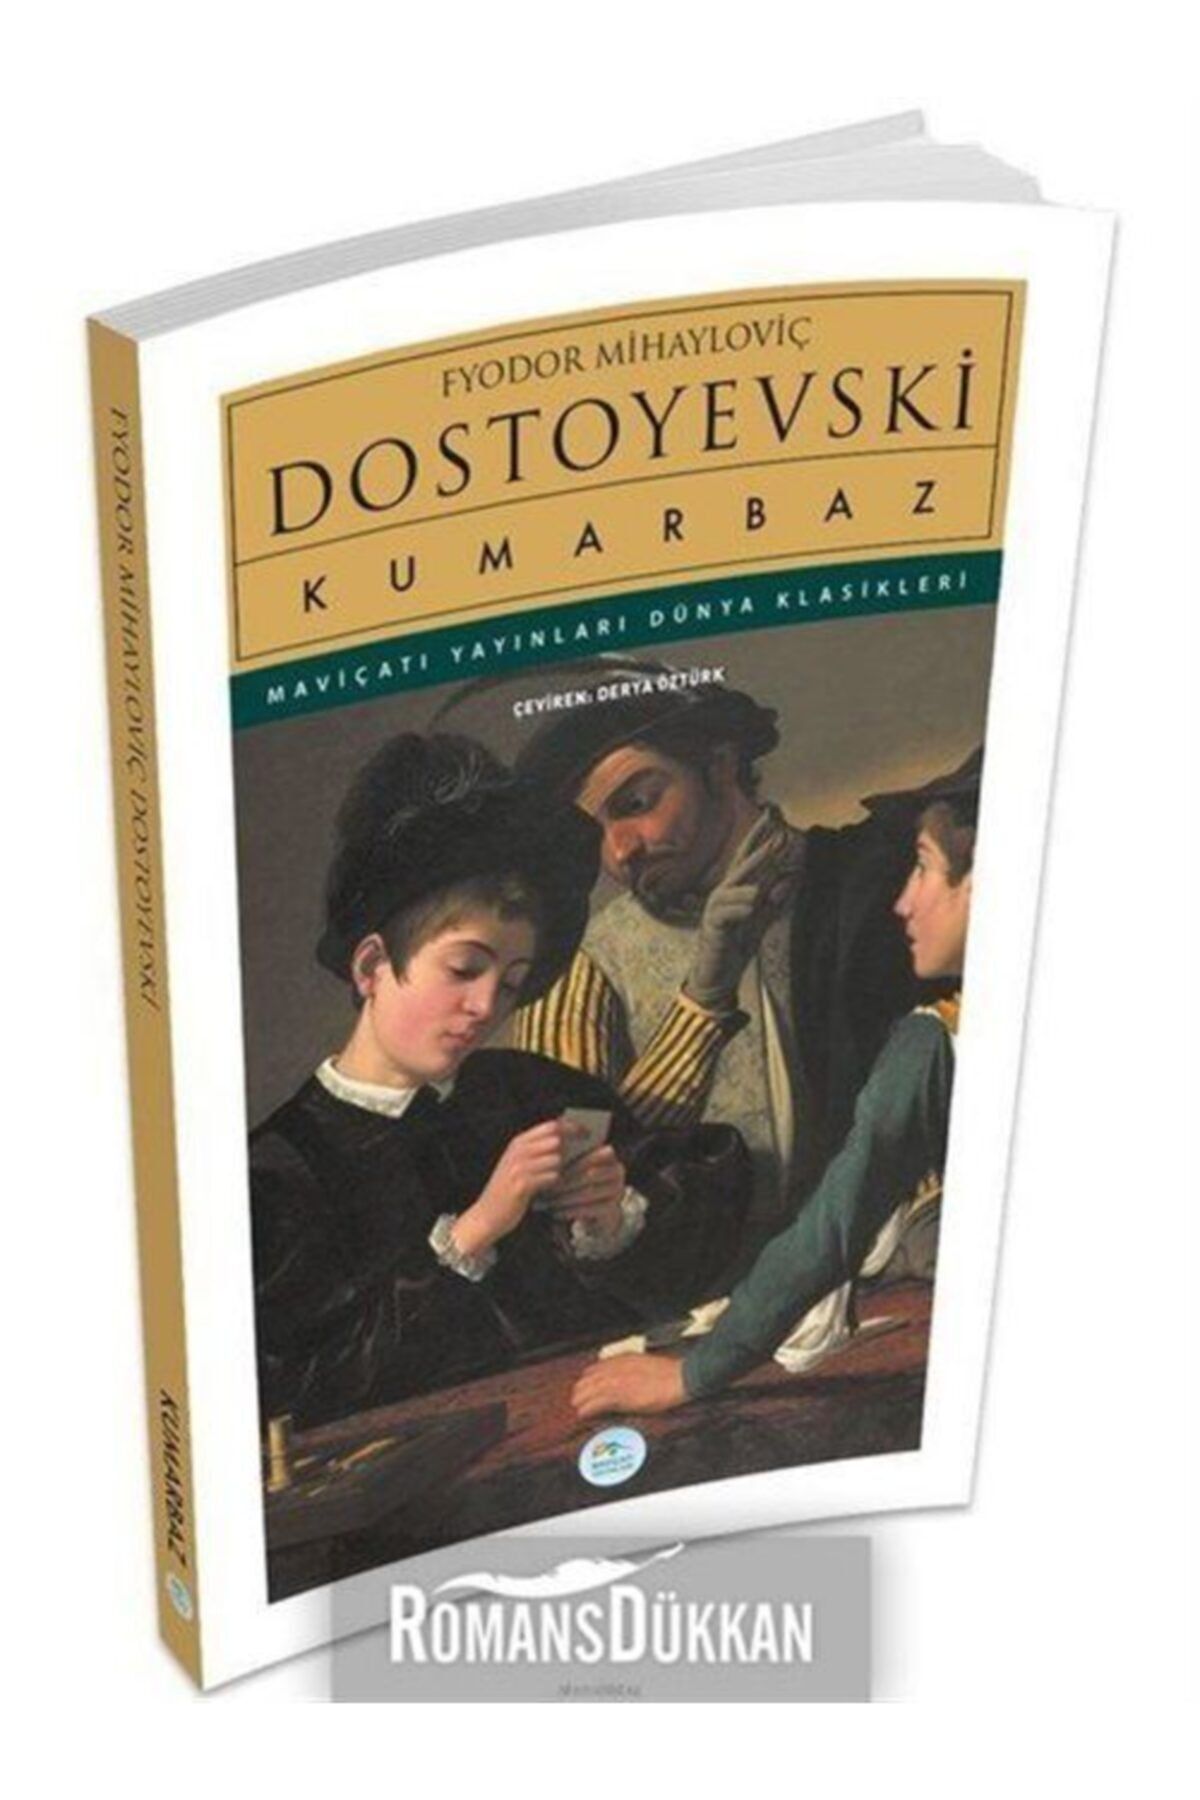 Mavi Çatı Yayınları Kumarbaz - Dostoyevski - Maviçatı (Dünya Klasikleri)